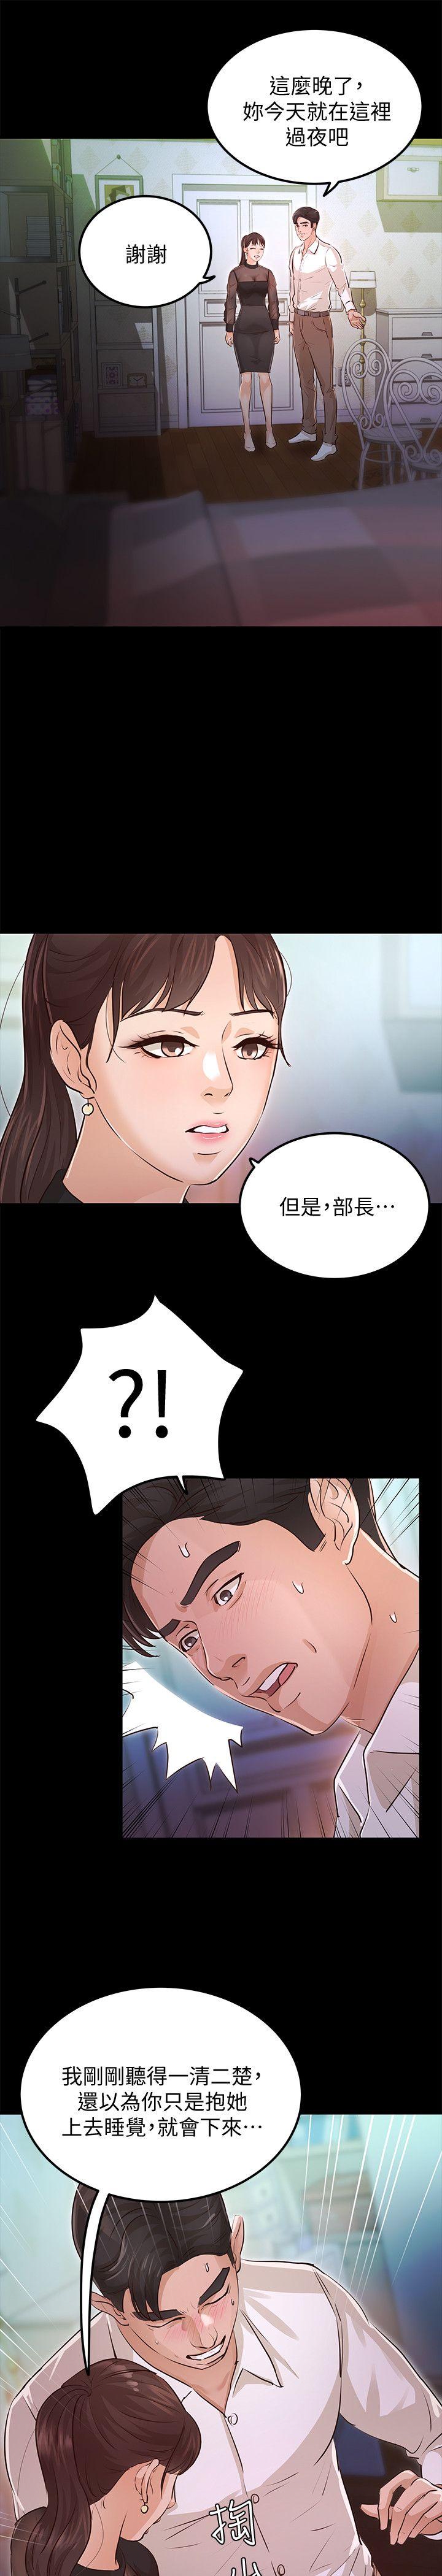 韩国污漫画 養女 最终话-专属于我的女秘书 27